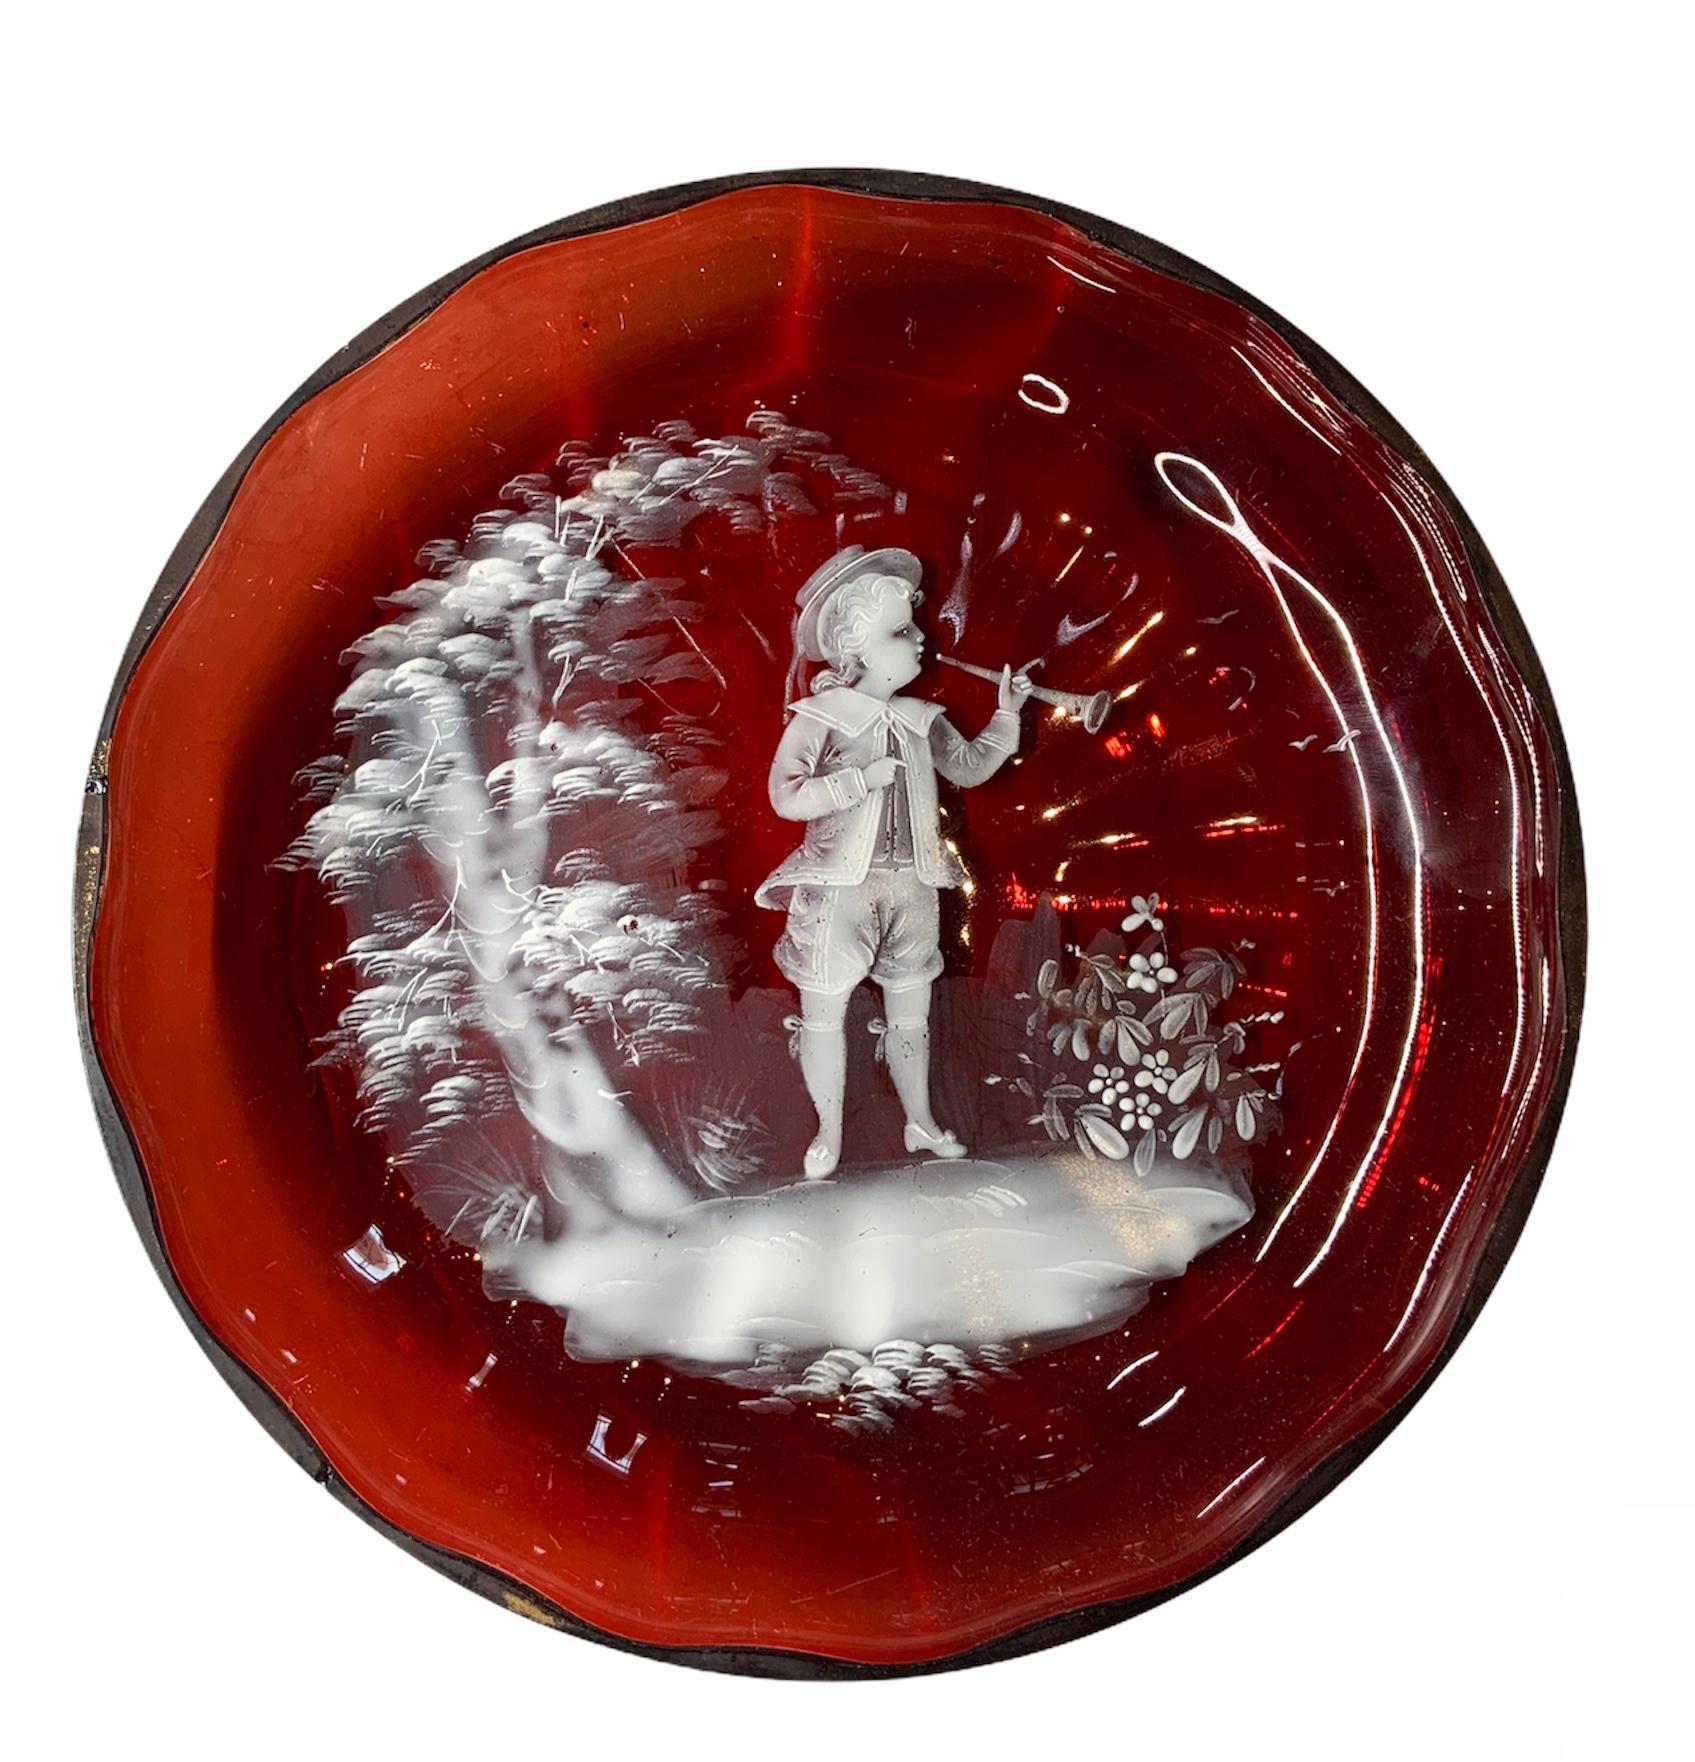 Ce verre émaillé rouge rubis et blanc de Mary Gregory présente une scène d'un garçon de l'ère victorienne jouant de la trompette dans un paysage orné d'un petit arbre et de quelques fleurs.